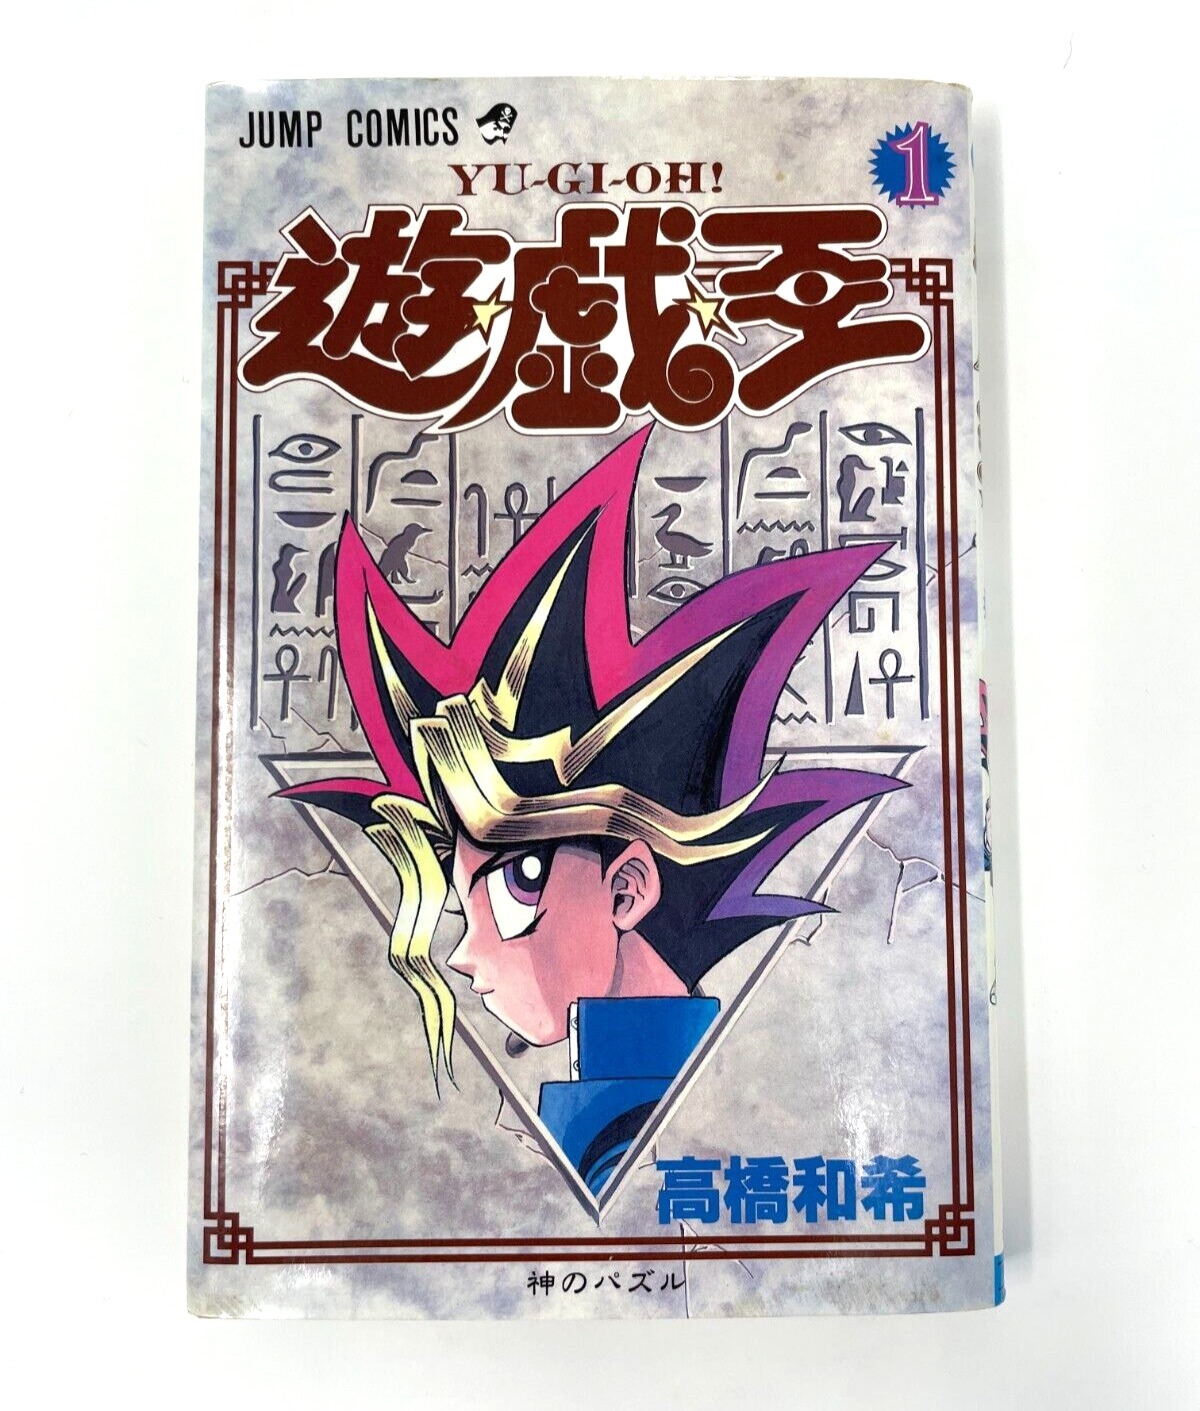 YU-GI-OH Comics 1st Print Edition Vol.1 KAZUKI TAKAHASHI Manga Japan